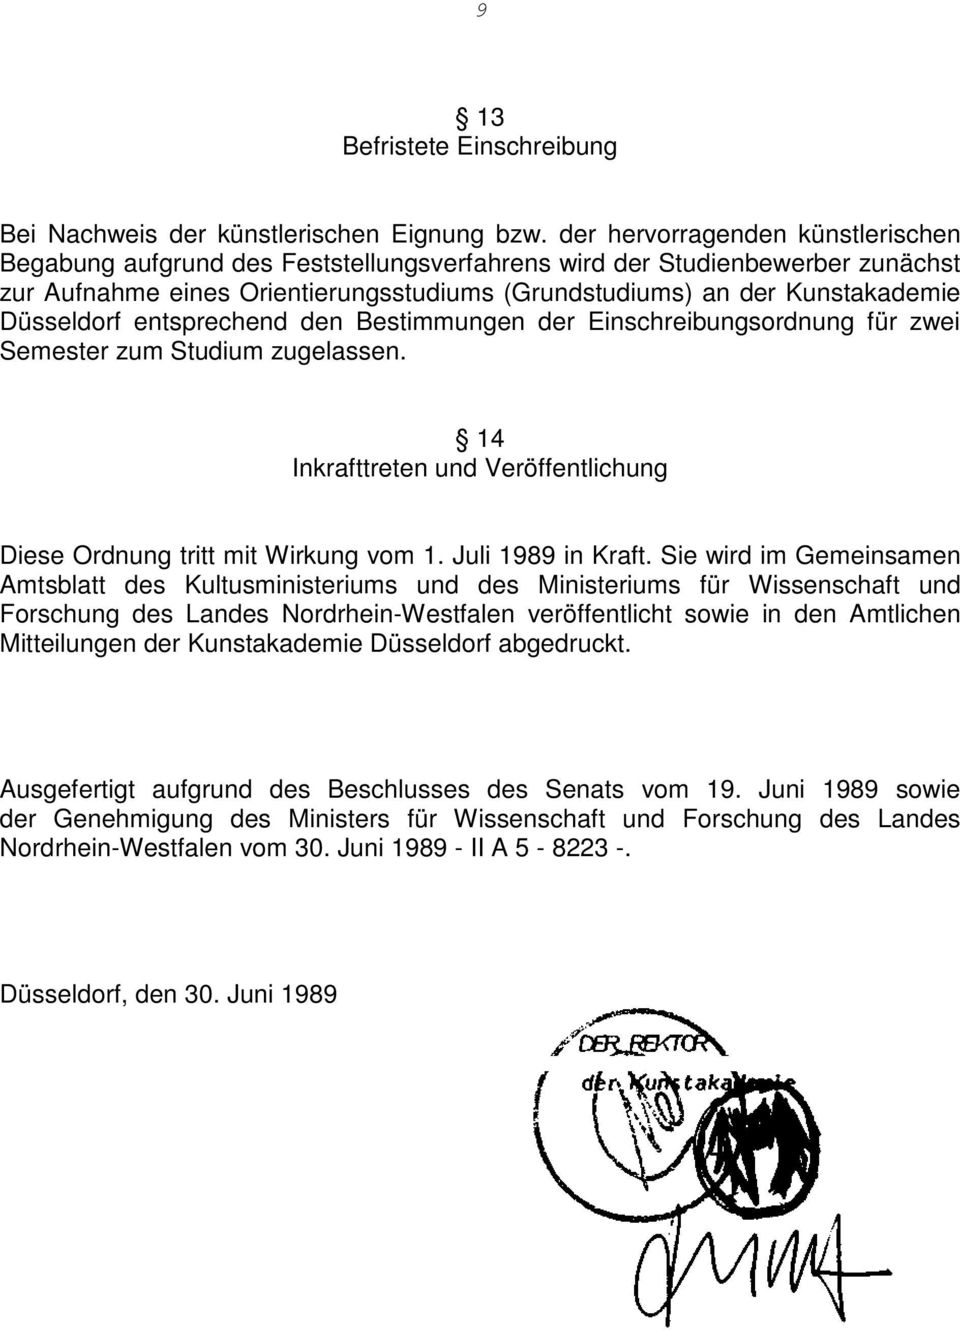 Düsseldorf entsprechend den Bestimmungen der Einschreibungsordnung für zwei Semester zum Studium zugelassen. 14 Inkrafttreten und Veröffentlichung Diese Ordnung tritt mit Wirkung vom 1.